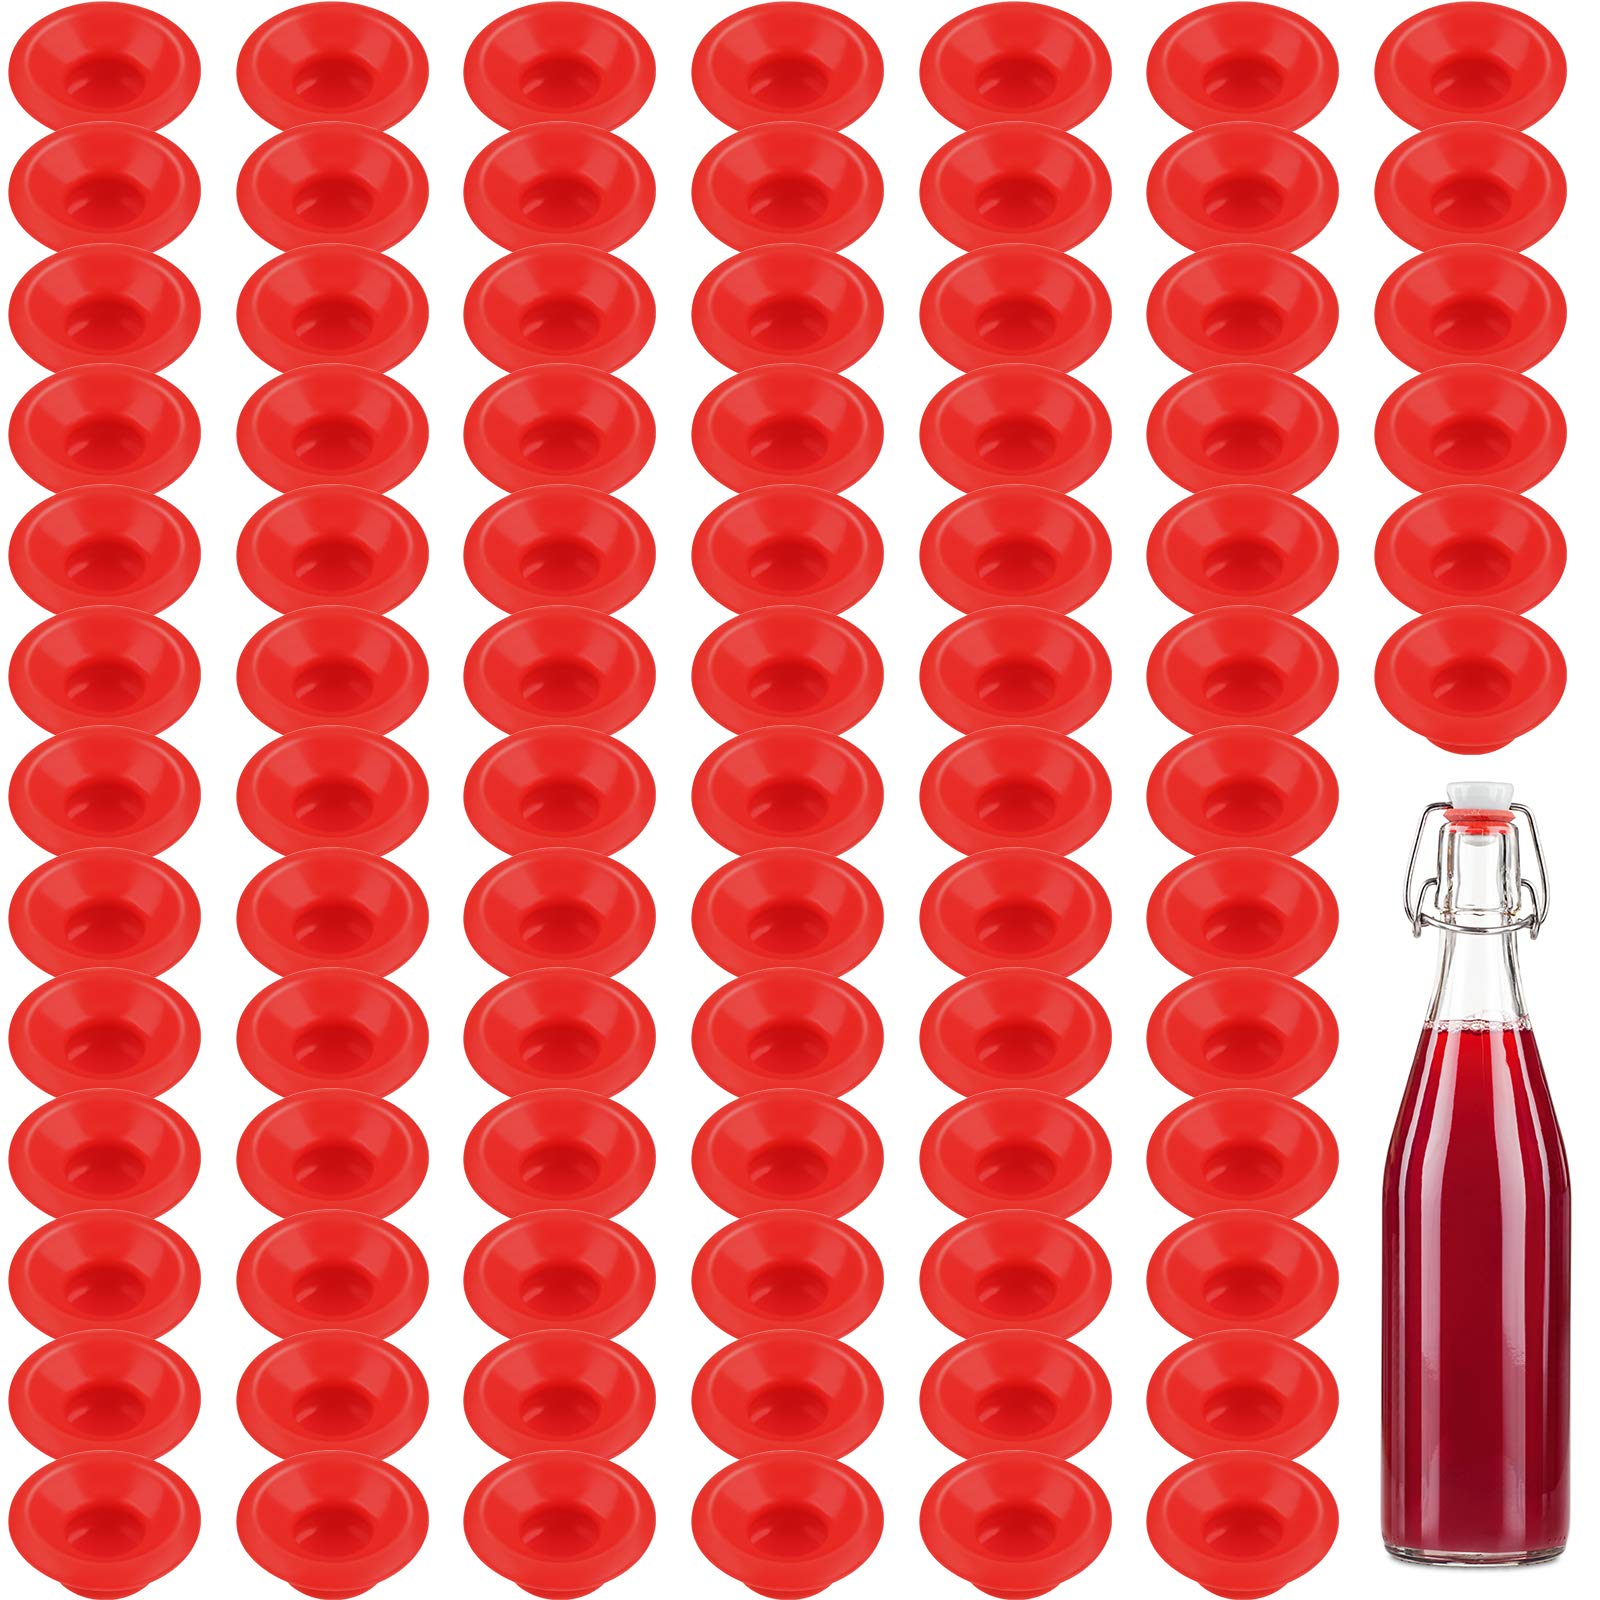 10 Stück Ersatzdichtung Silikon Dichtungsringe für Trinkflasche  Flaschendeckel